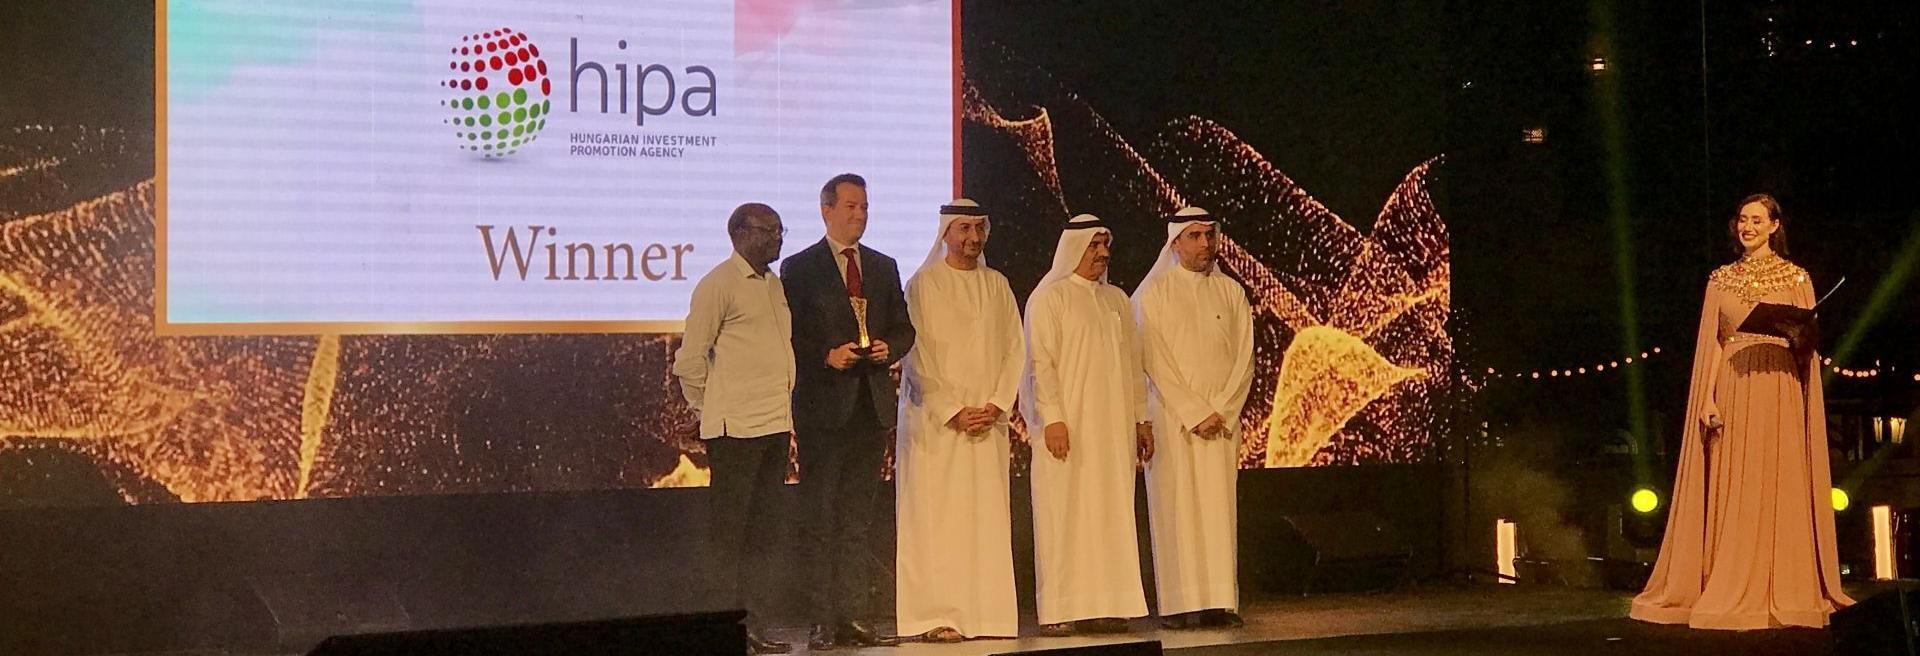 A HIPA nyerte az AIM Annual Investment Award 2019 díját kiemelkedő eredményeiért